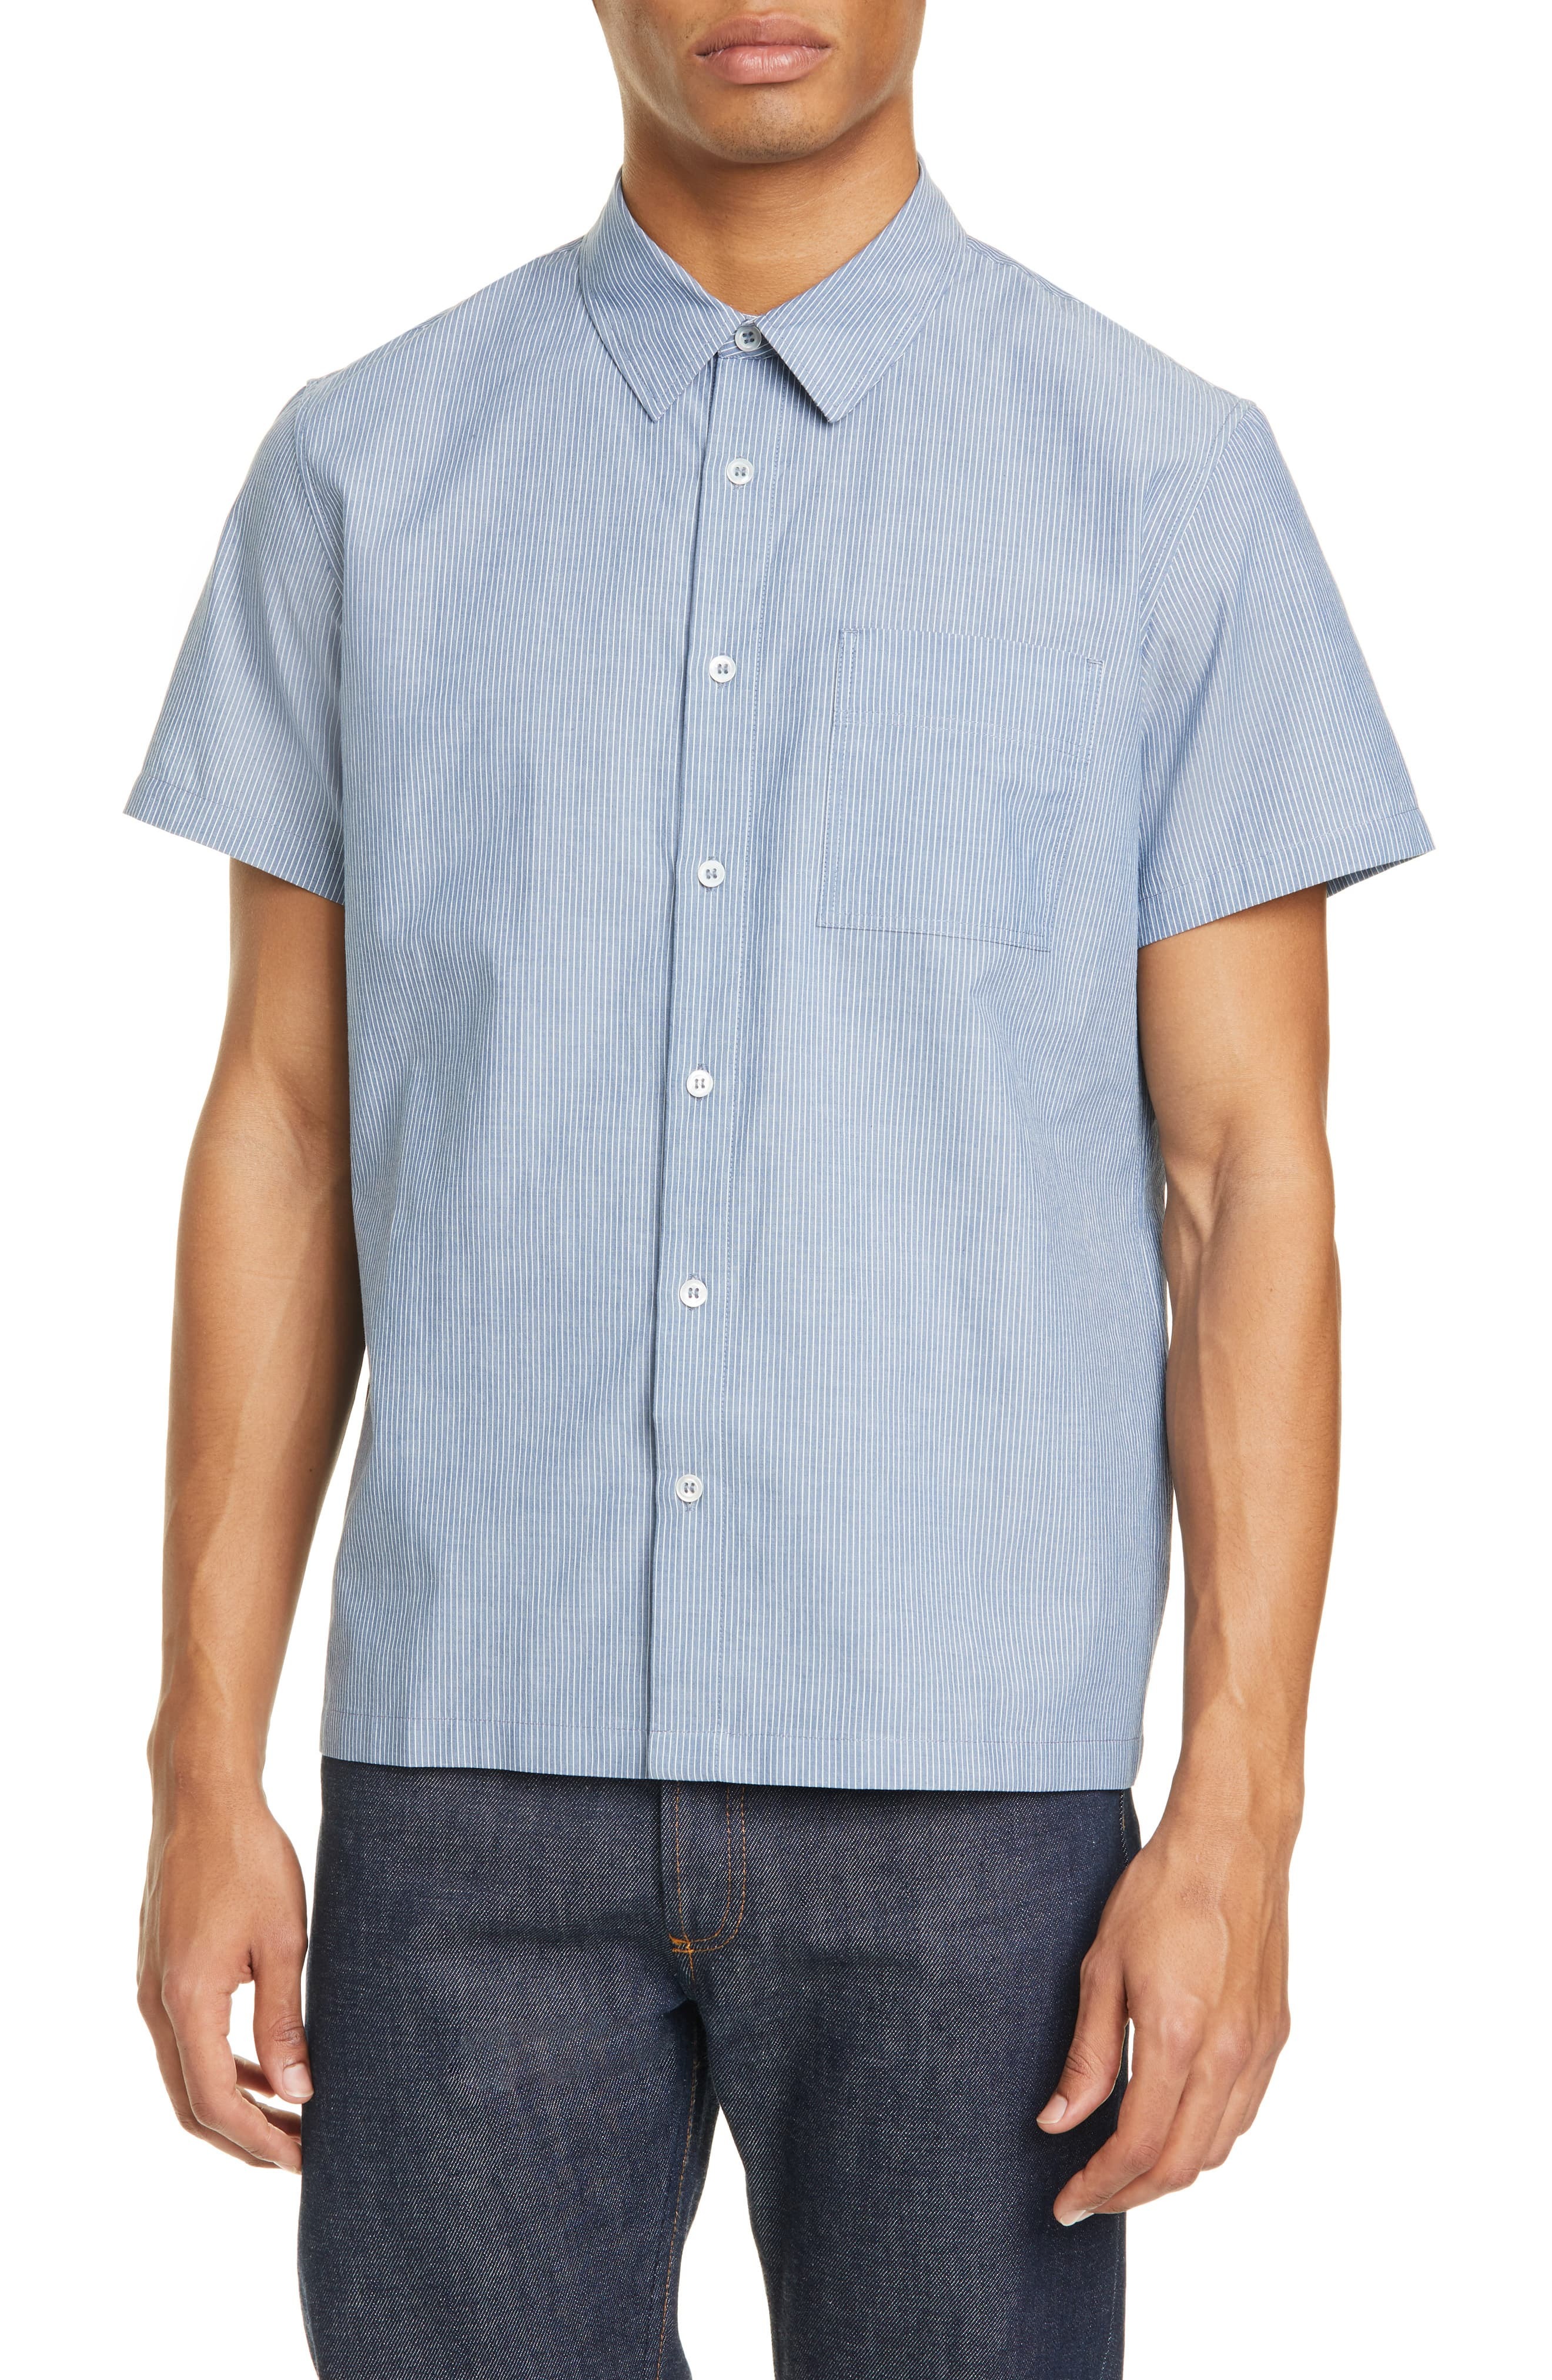 A.P.C. Bruce Pinstripe Short Sleeve Button Up Shirt, $113 | Nordstrom ...